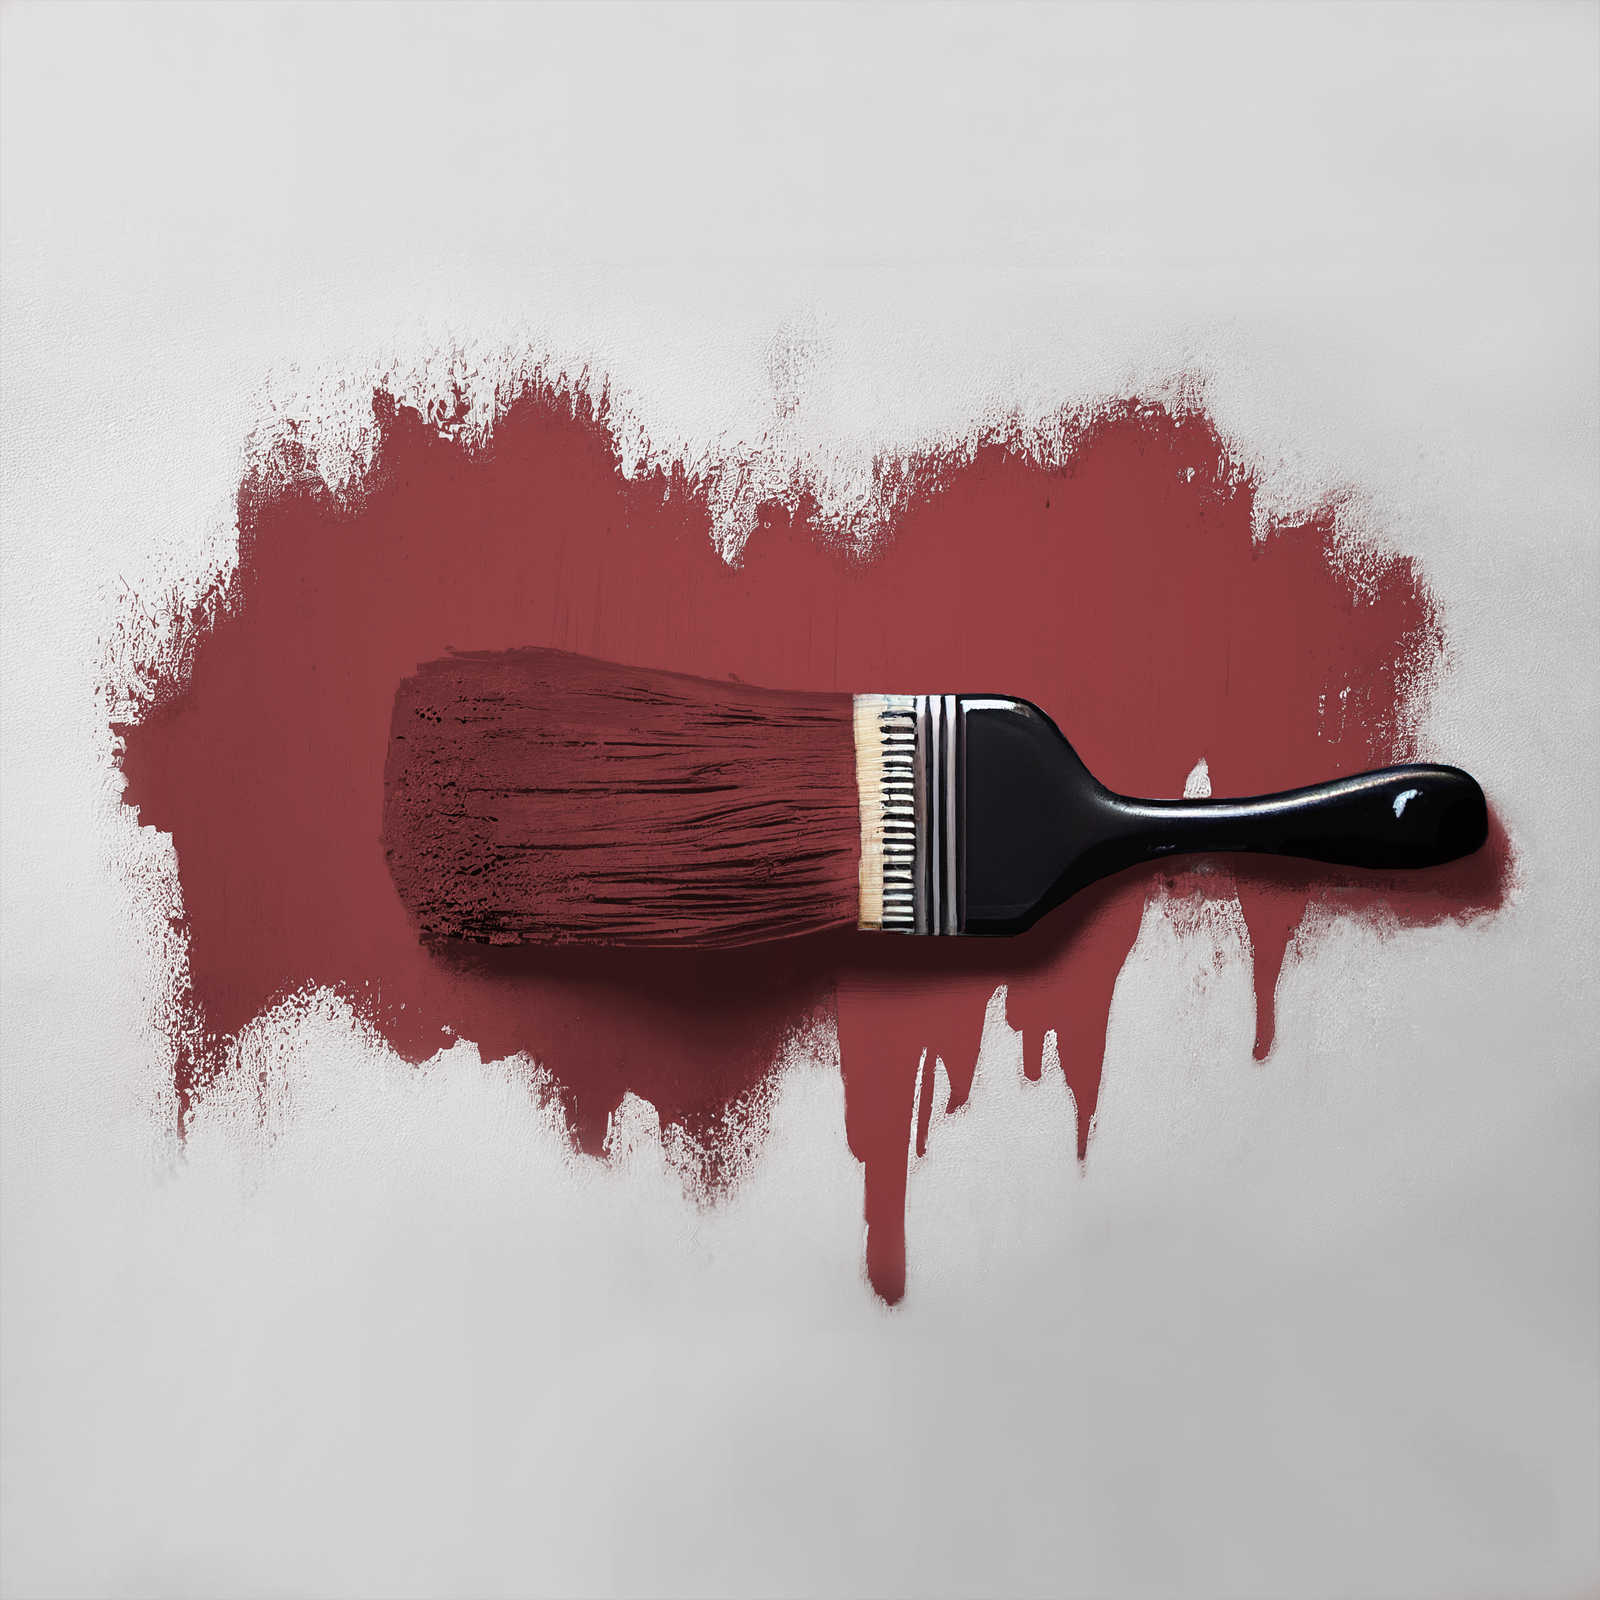             Peinture murale TCK7006 »Perky Pomegranate« en rouge foncé passionné – 5,0 litres
        